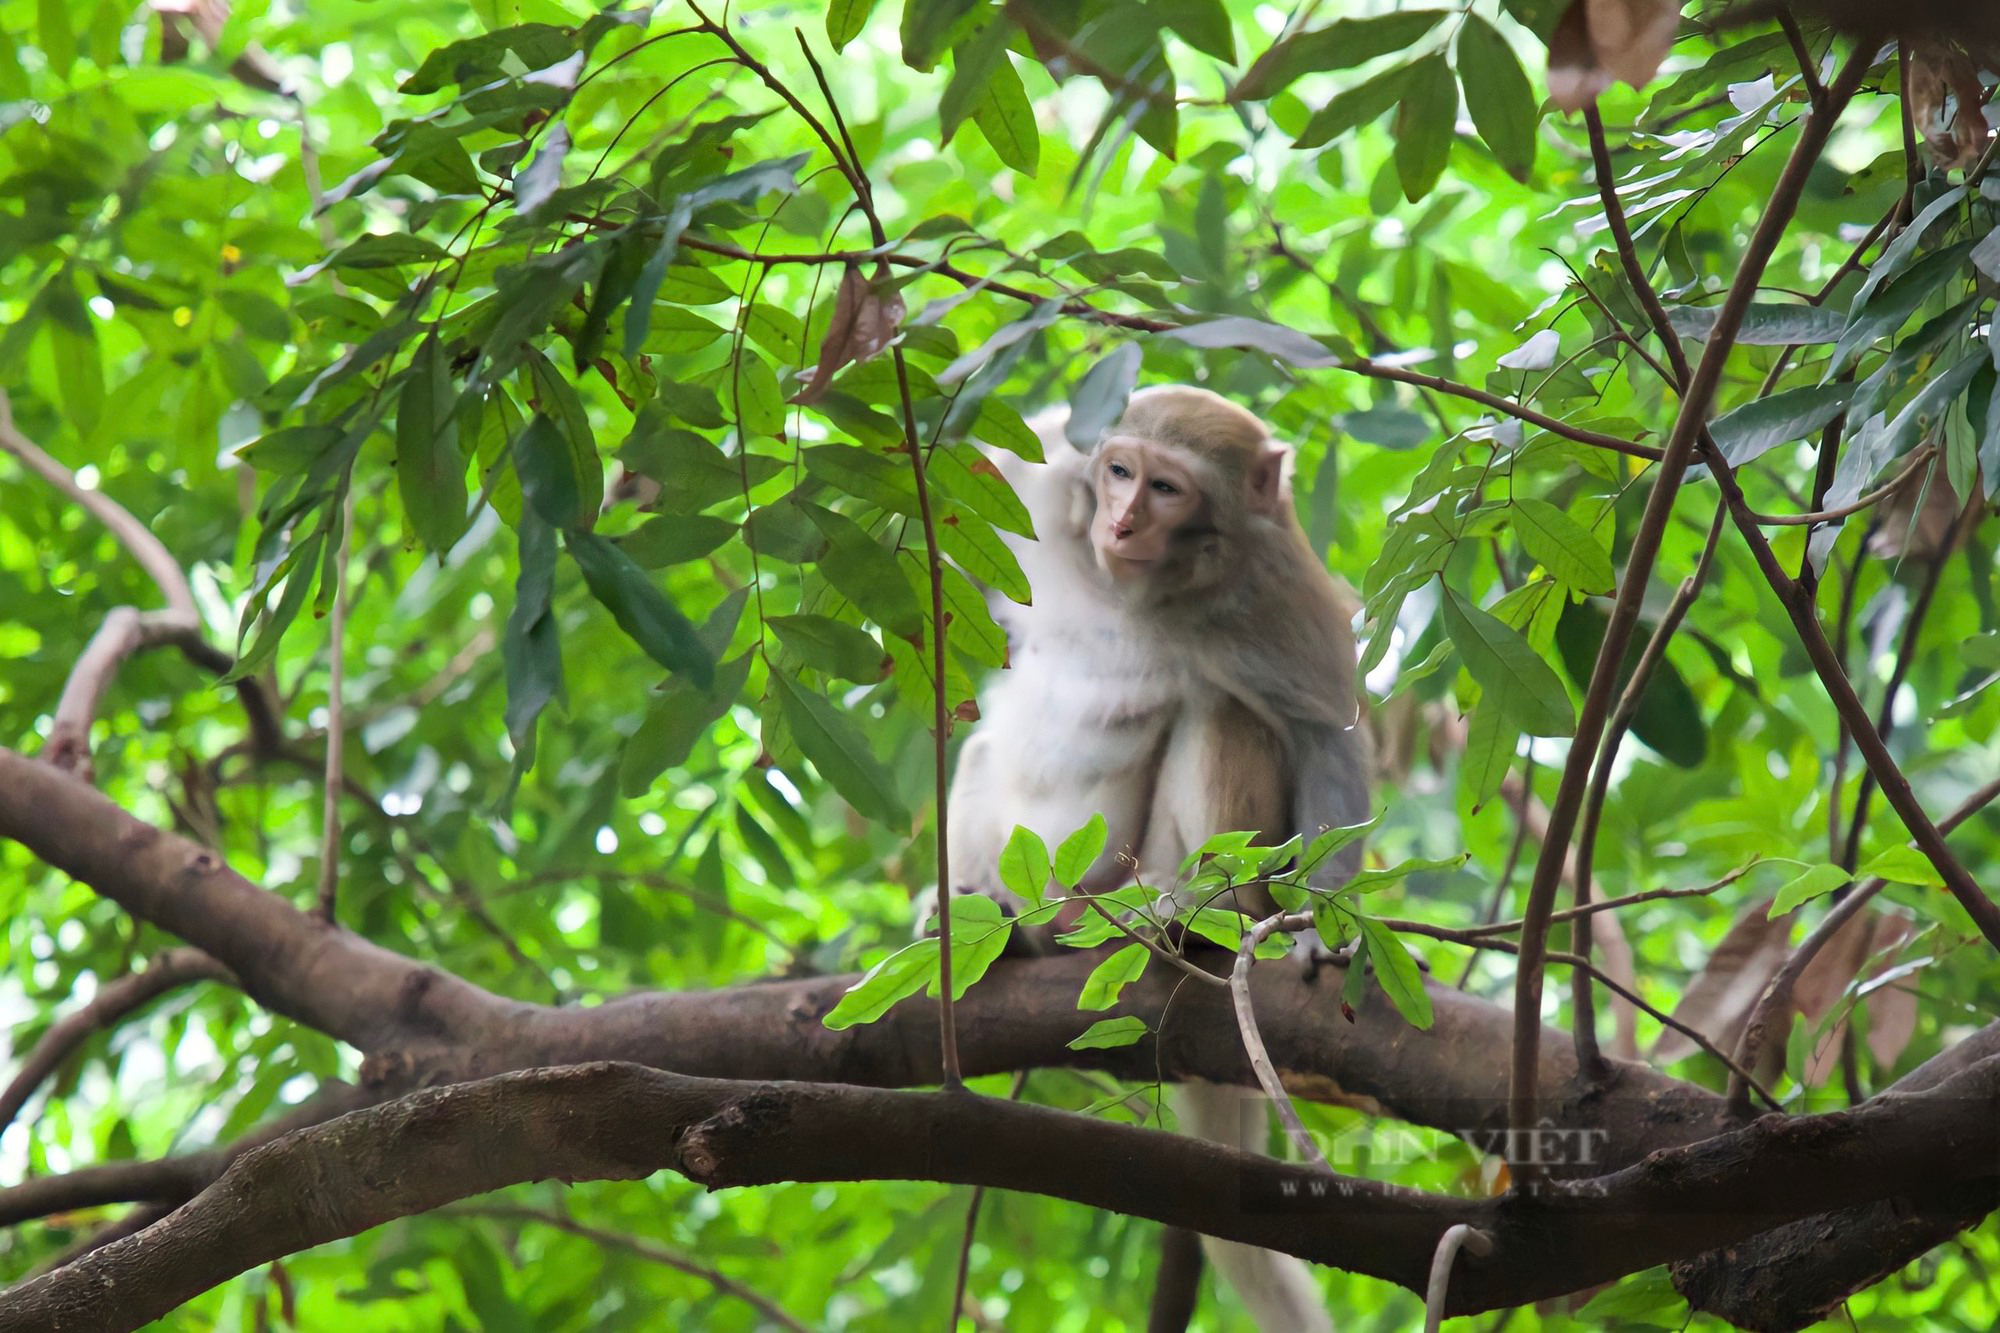 Tận mắt chứng kiến nhóm khỉ hoang phá sẽ khiến bạn không muốn bỏ lỡ. Hình ảnh này đưa bạn đến gần với sự kỳ diệu của thiên nhiên và những động vật hoang dã nơi chúng tồn tại.